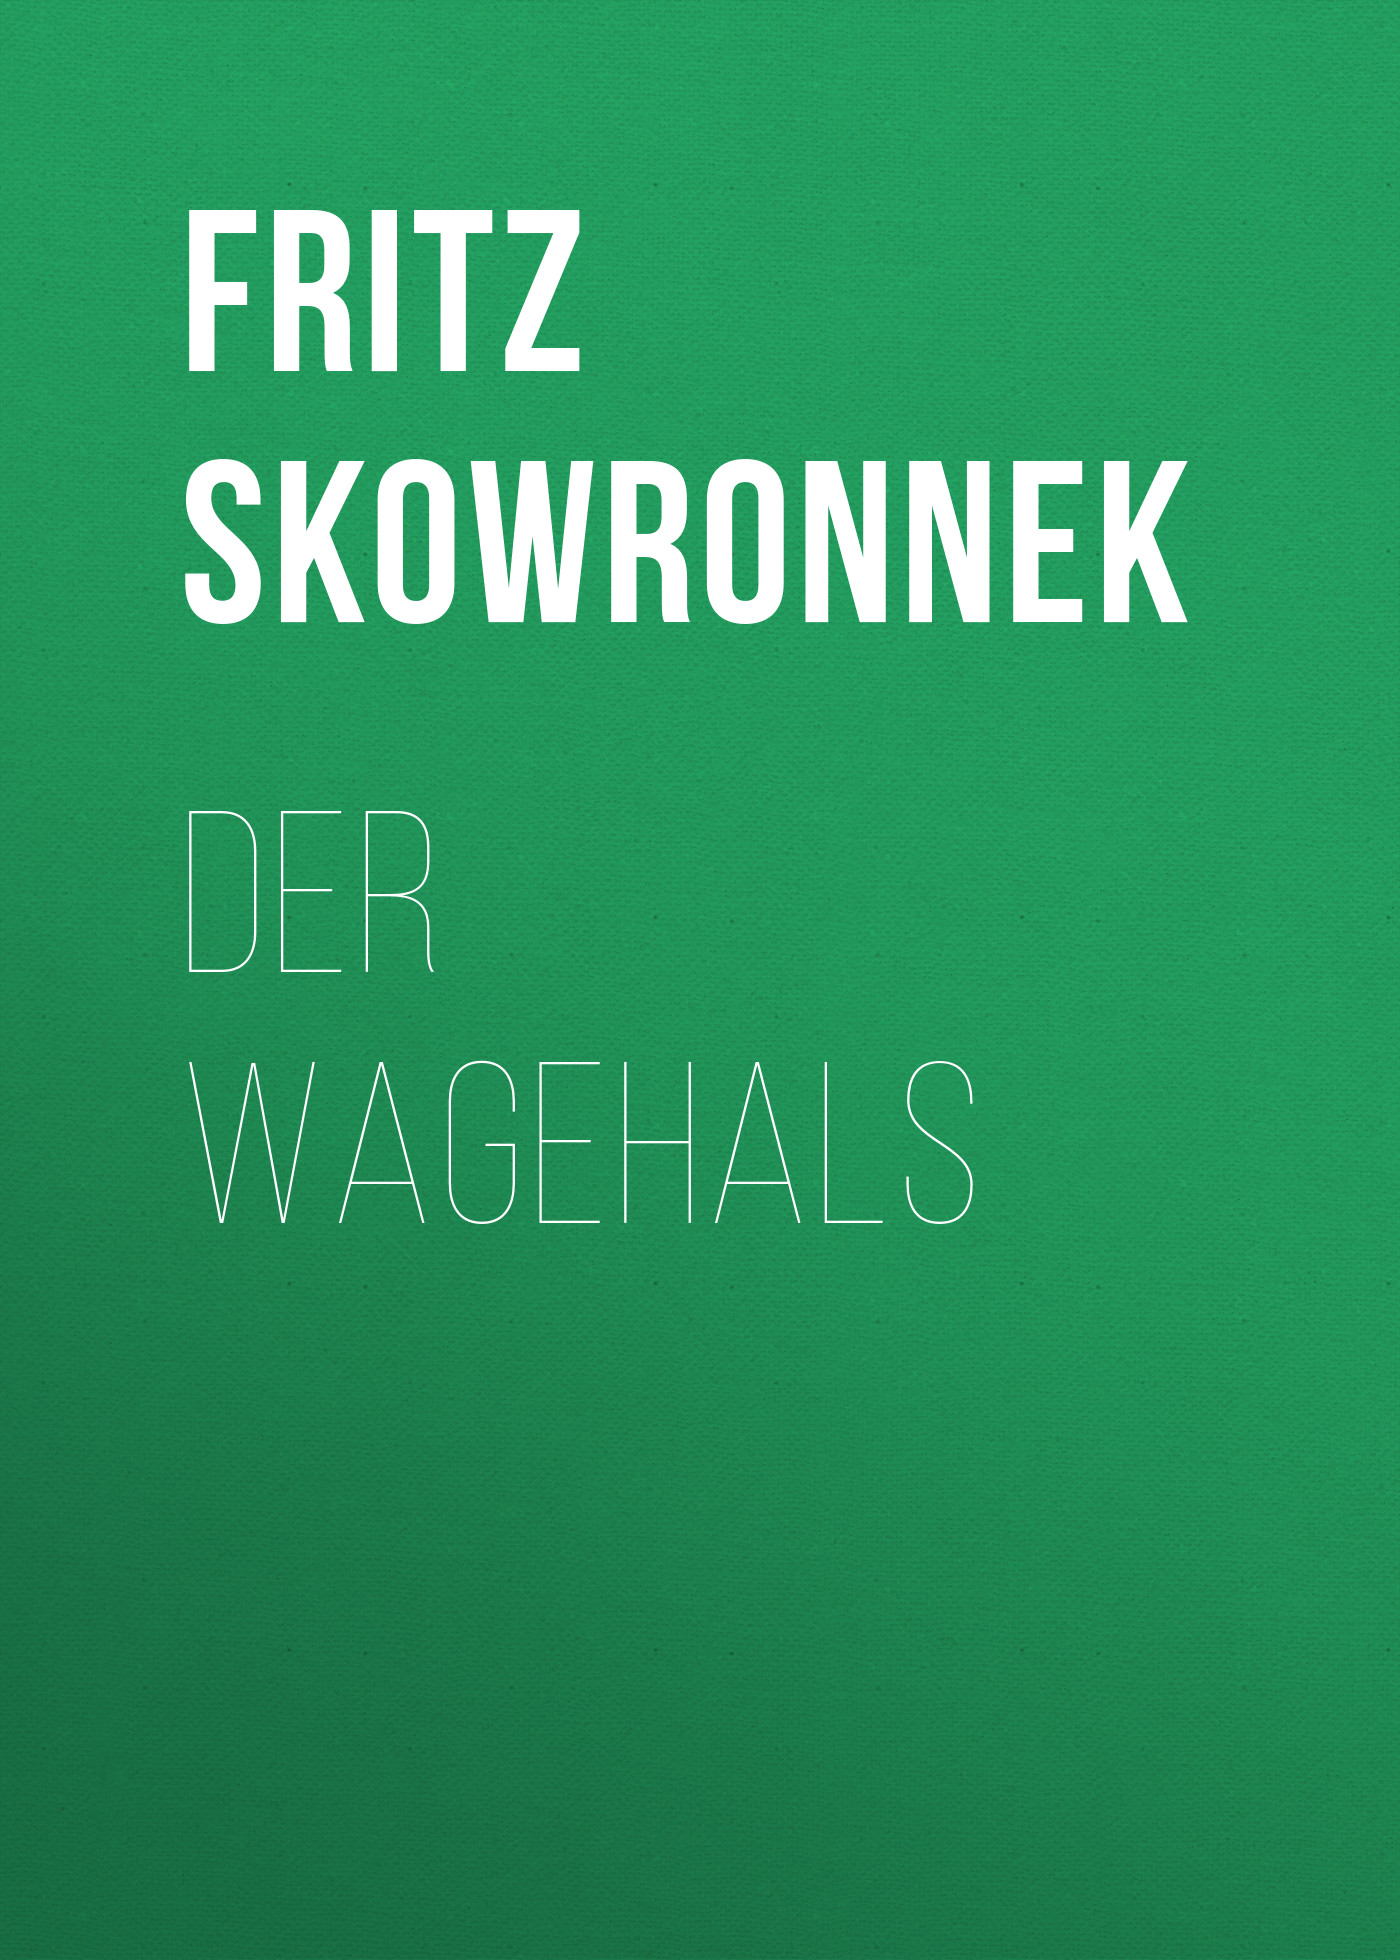 Книга Der Wagehals из серии , созданная Fritz Skowronnek, может относится к жанру Зарубежная классика. Стоимость электронной книги Der Wagehals с идентификатором 48633268 составляет 0 руб.